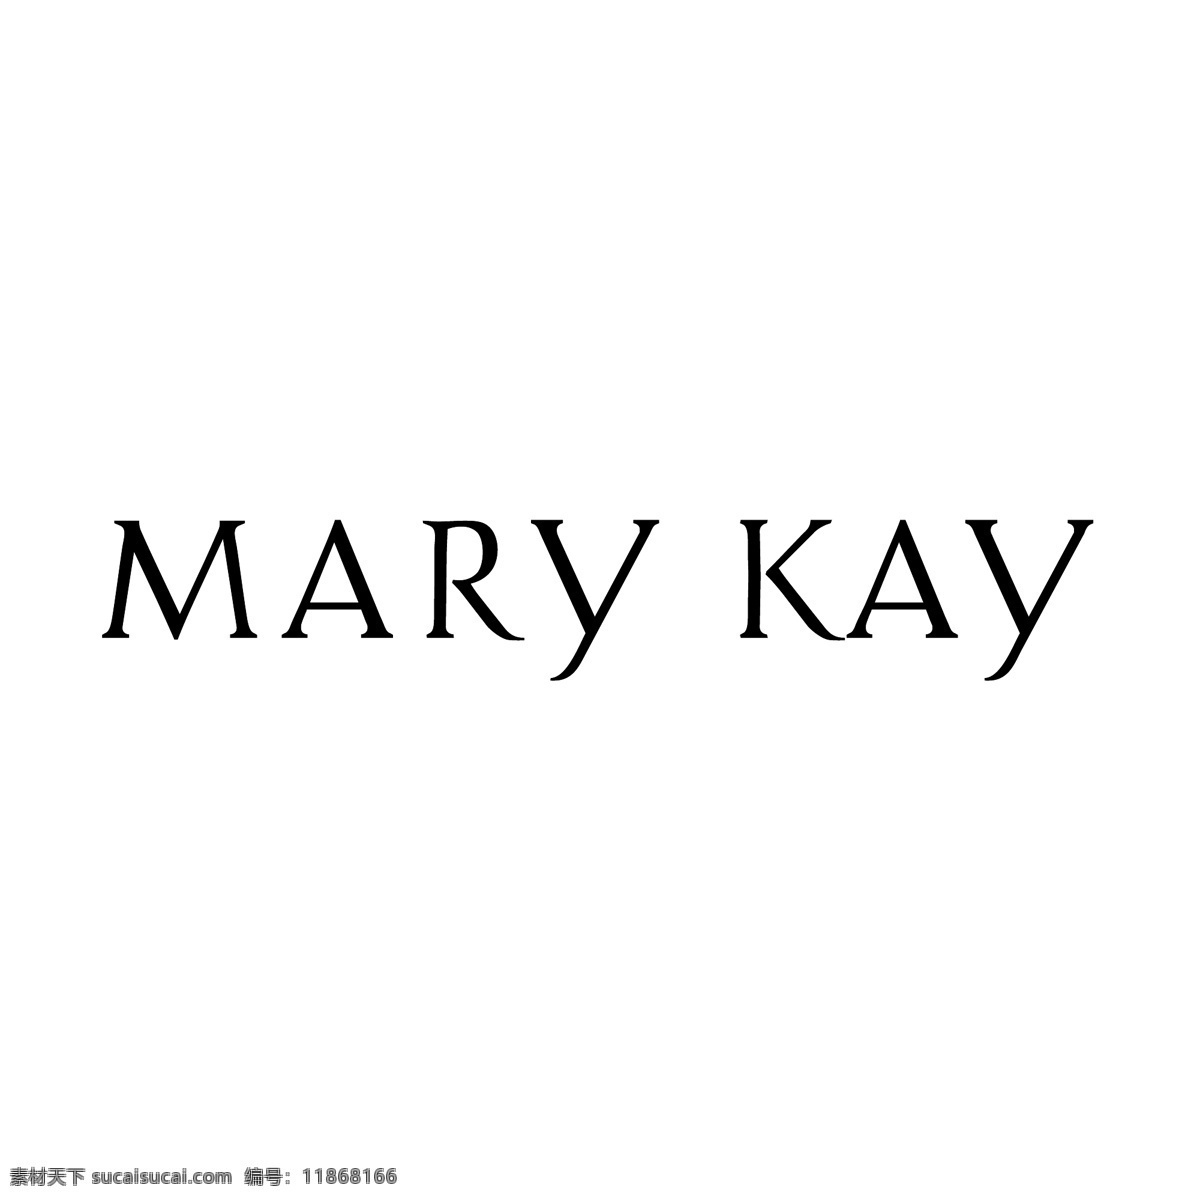 凯 图像 玛丽 玛丽凯 kay 标志 化妆品 标识 徽标 矢量 作品 玛丽化妆品 玛丽kay logo2 免费 矢量玛丽凯 矢量图 建筑家居